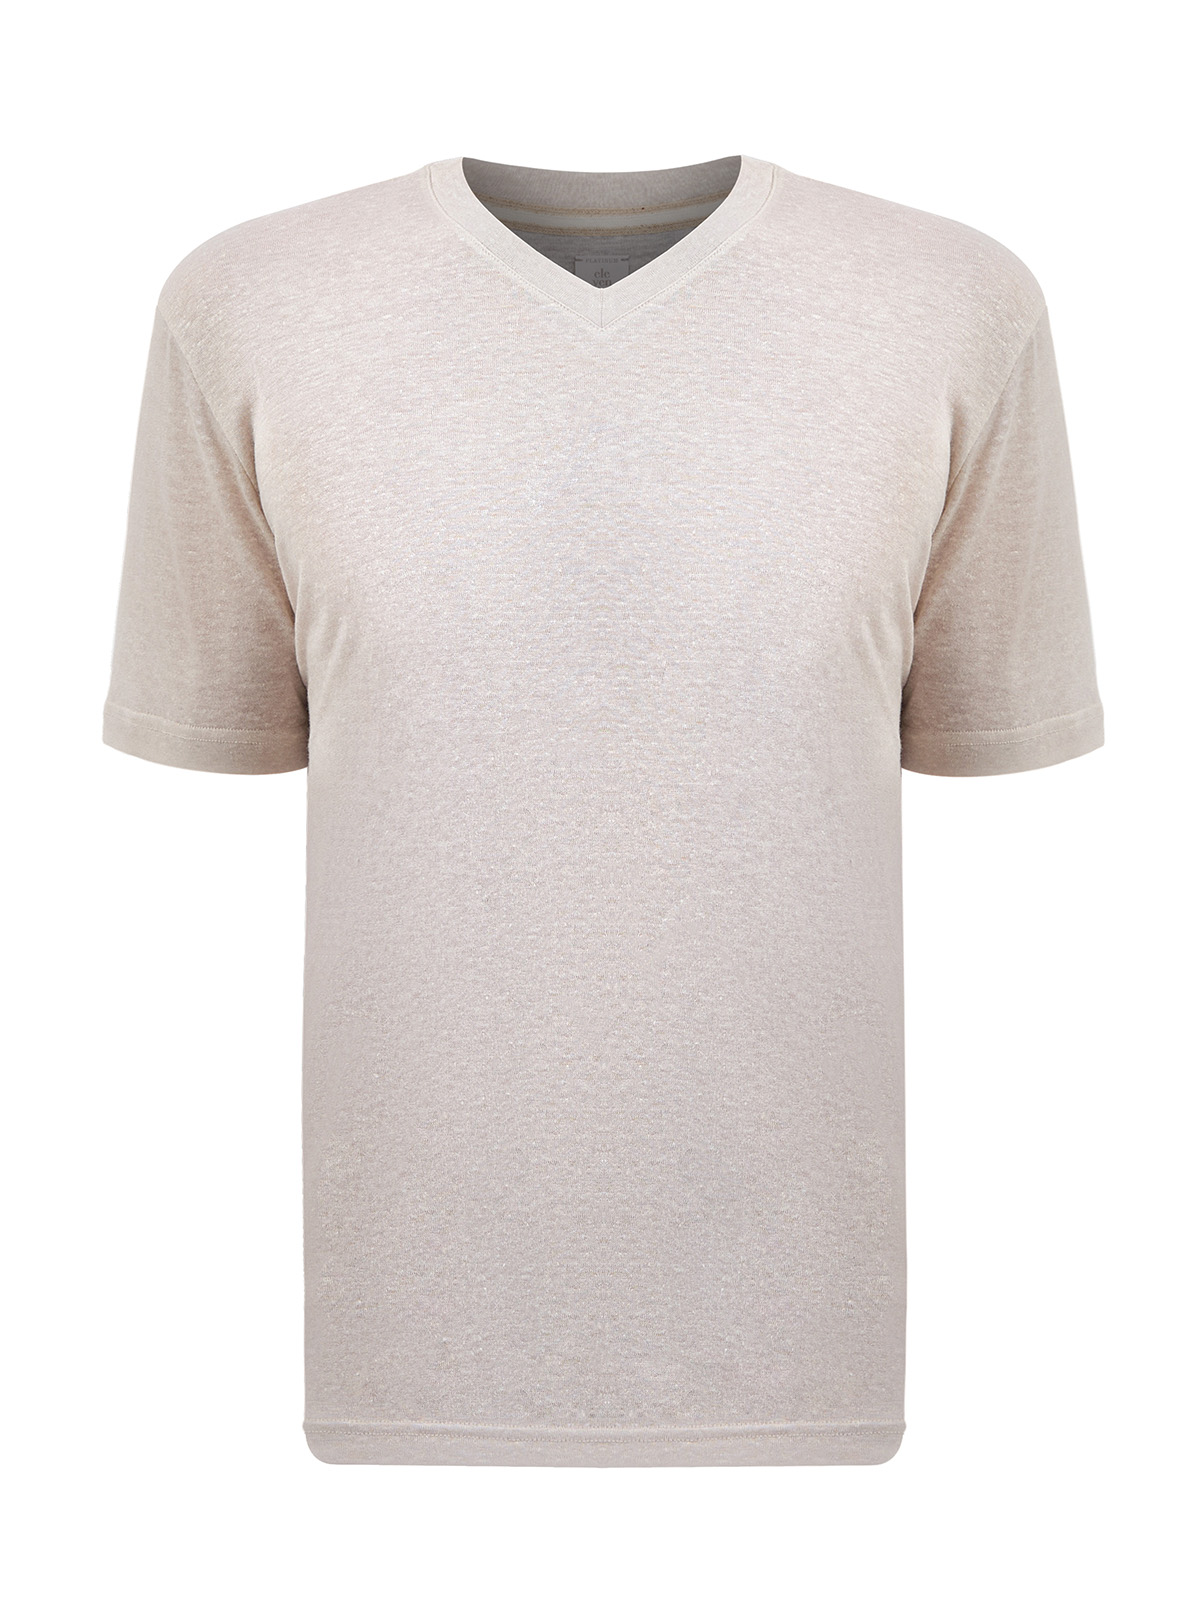 Легкая футболка с V-образным вырезом из меланжевого льна и хлопка ELEVENTY, цвет бежевый, размер 48;50;52;54